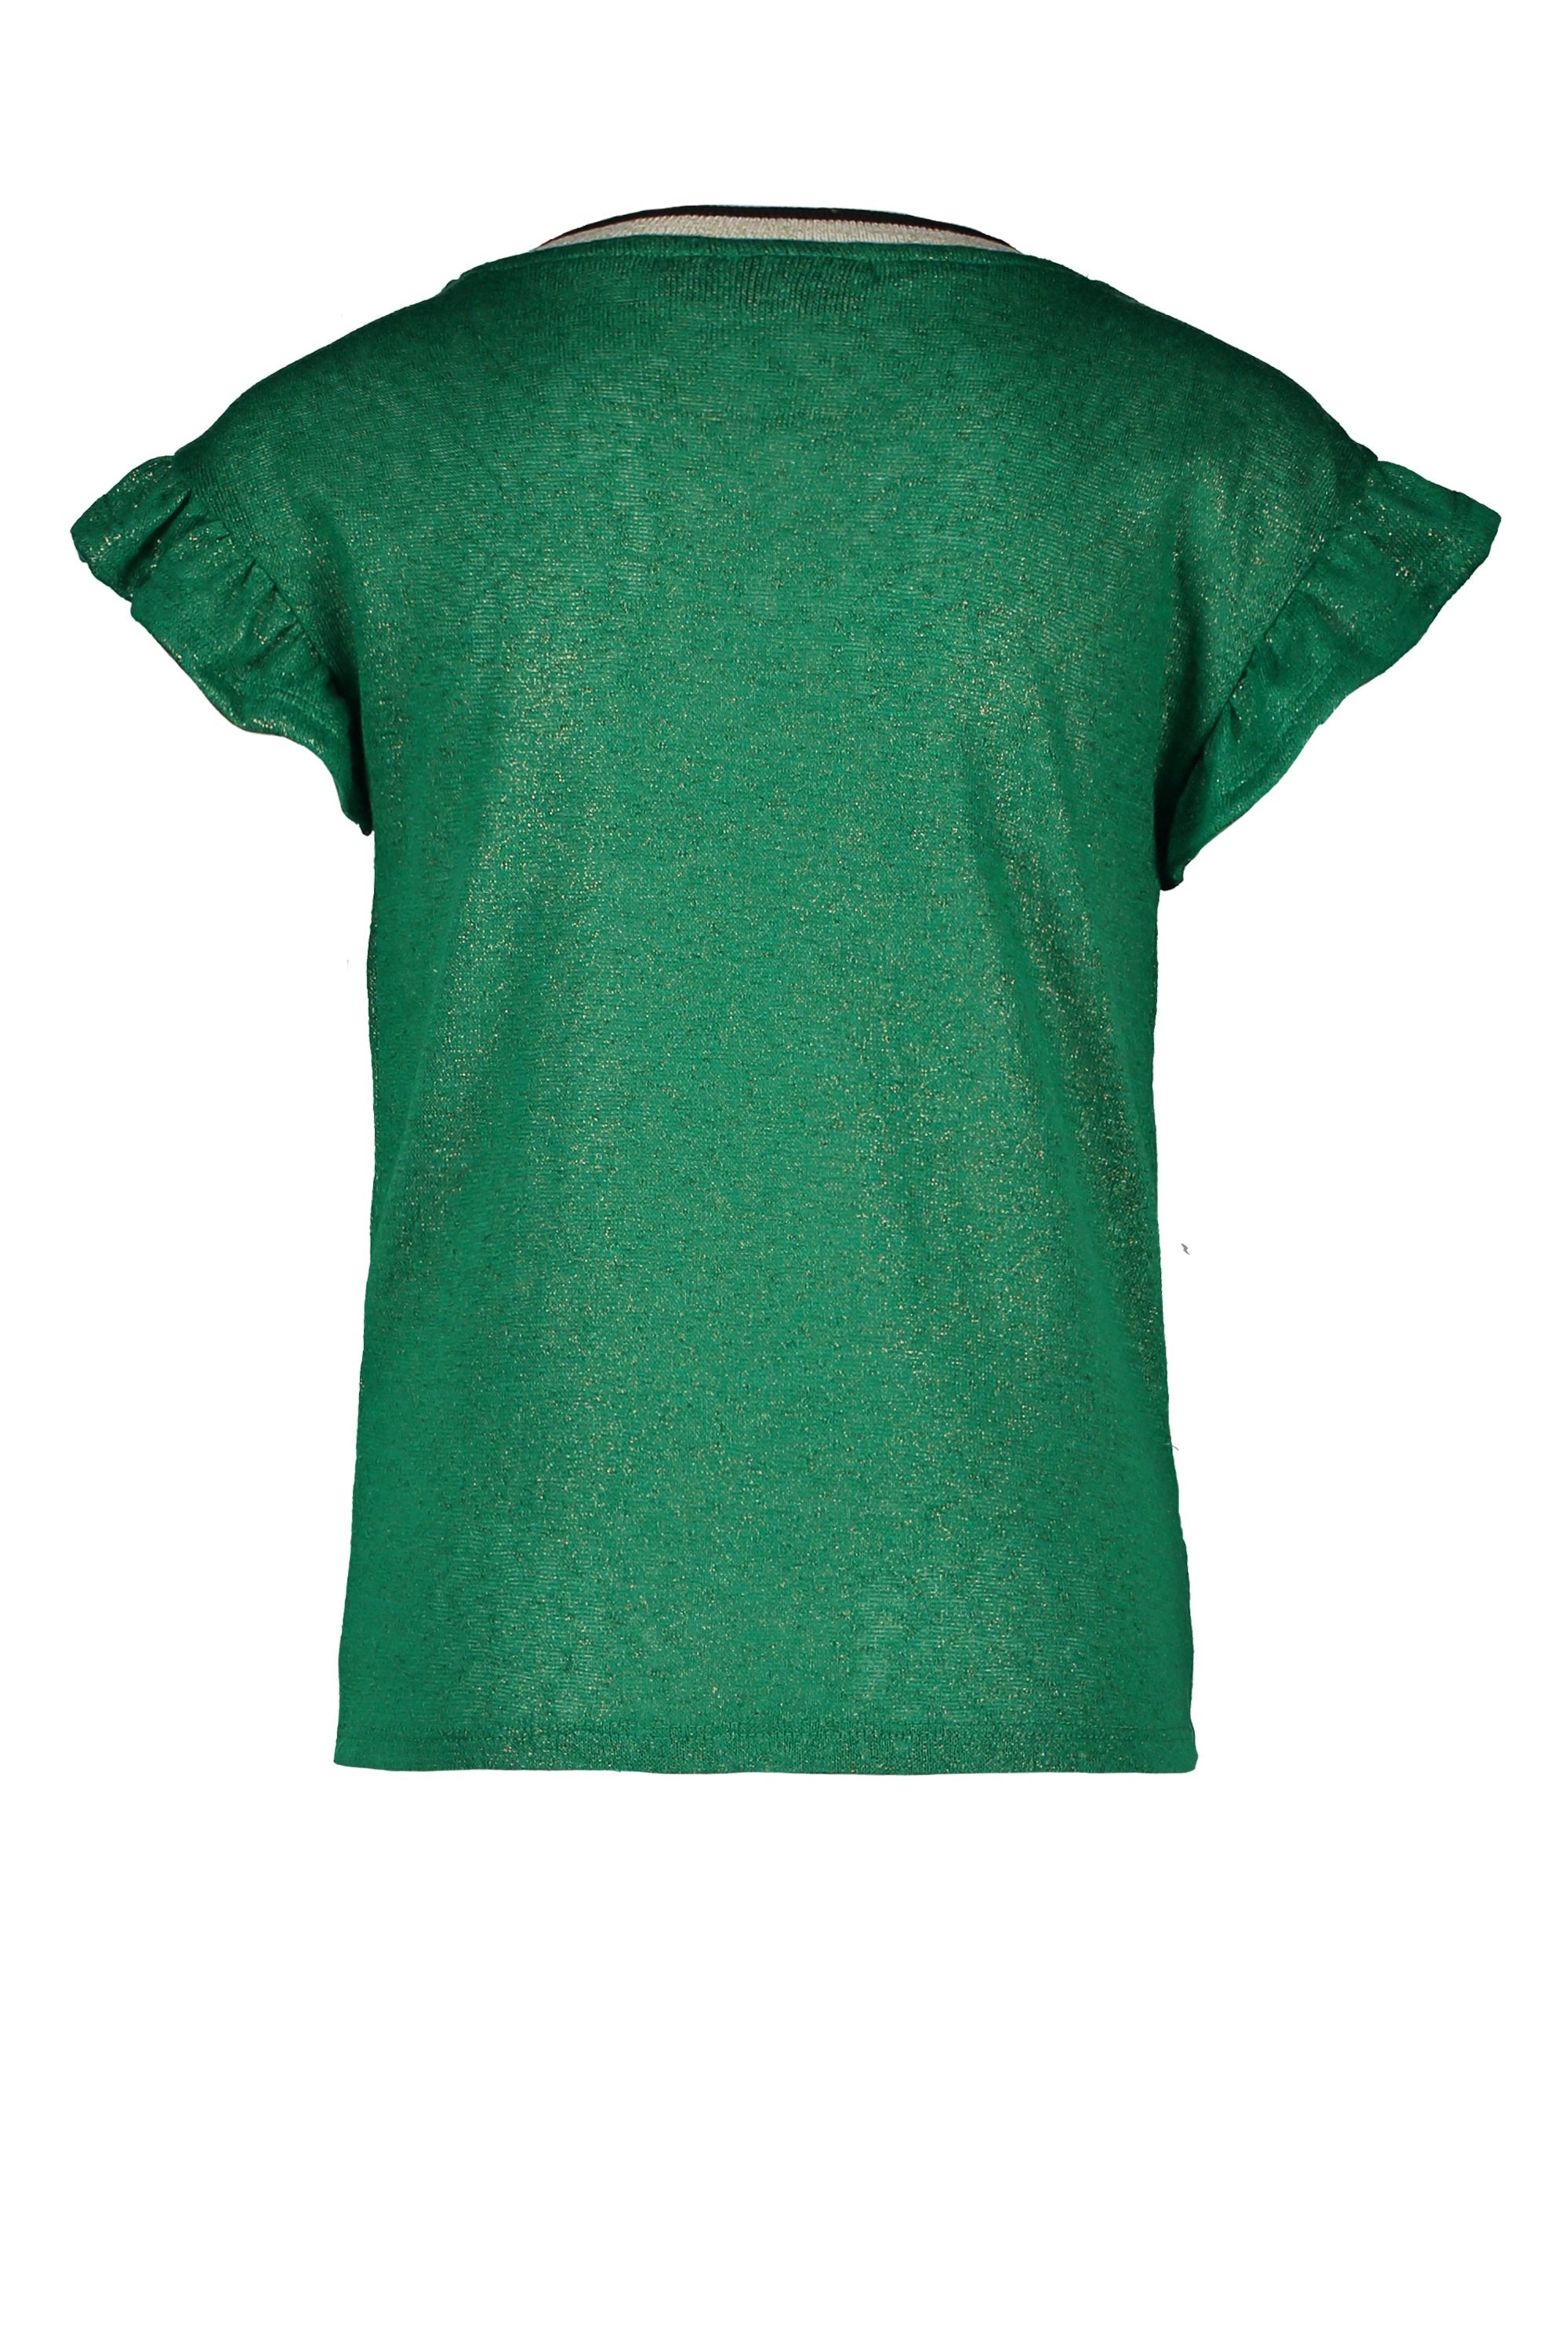 Meisjes Flo girls metallic jersey ruffle top van Flo in de kleur Sea green in maat 152.